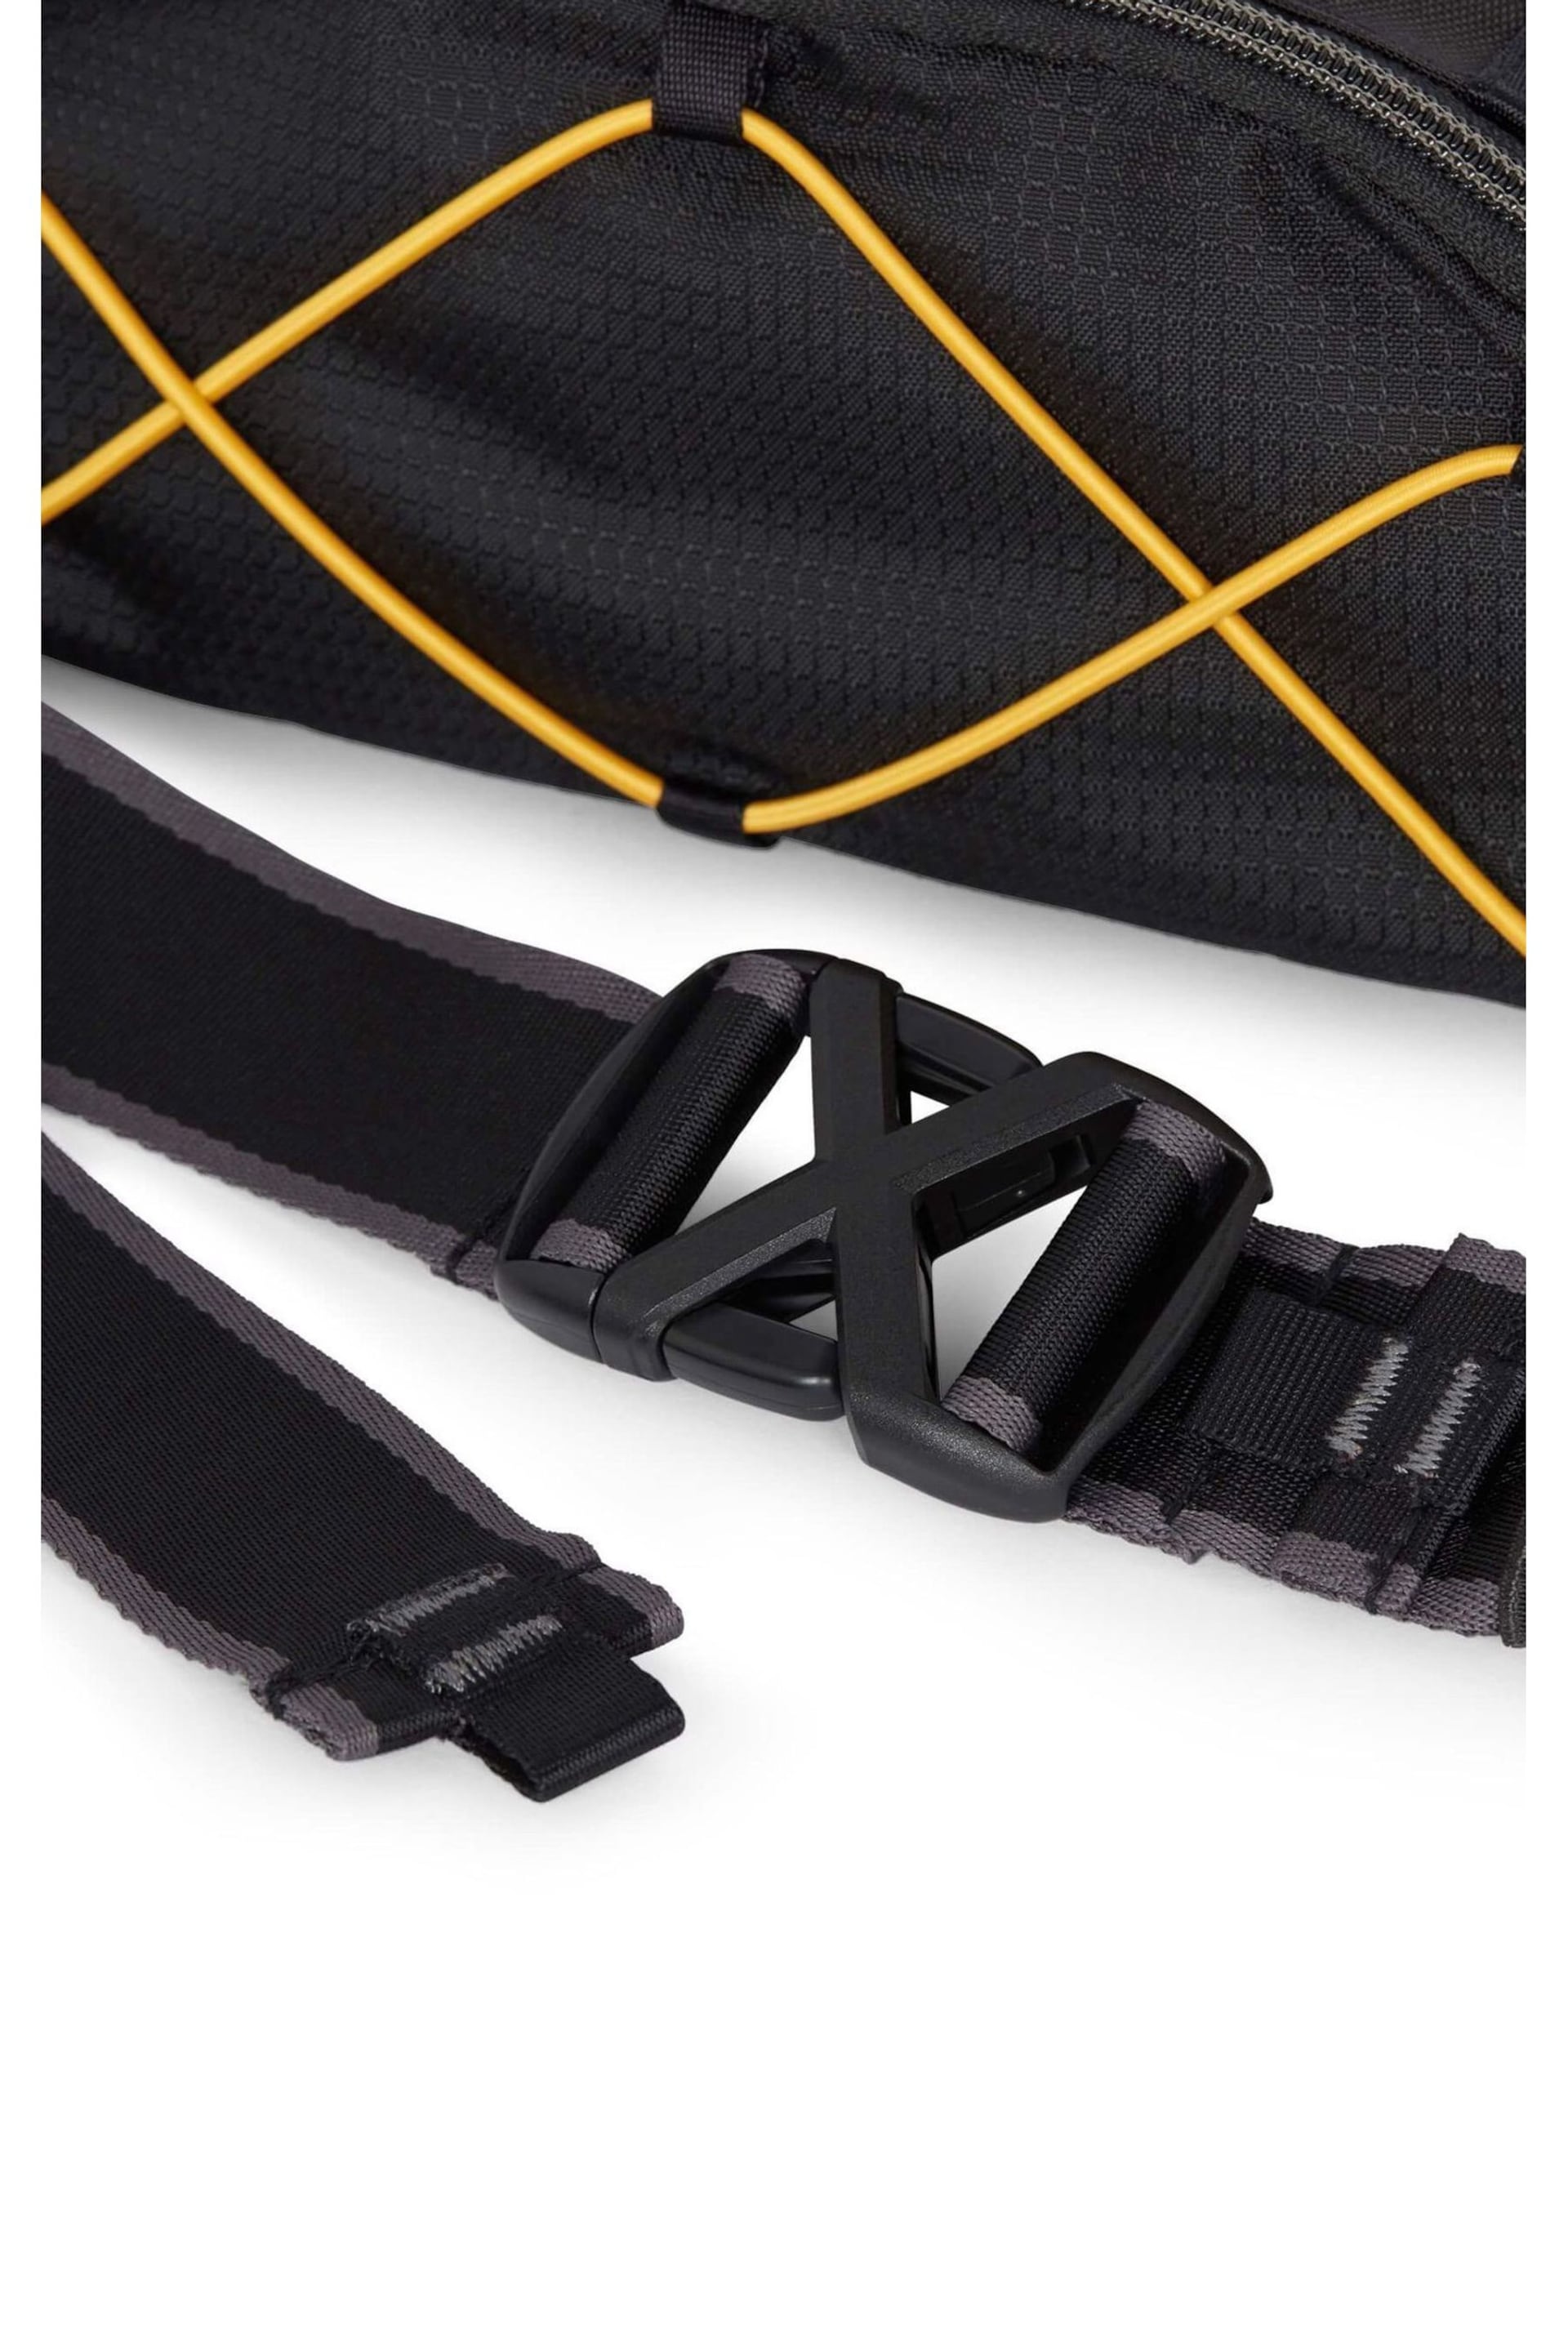 Antler Bamburgh Belt Black Bag - Image 5 of 5